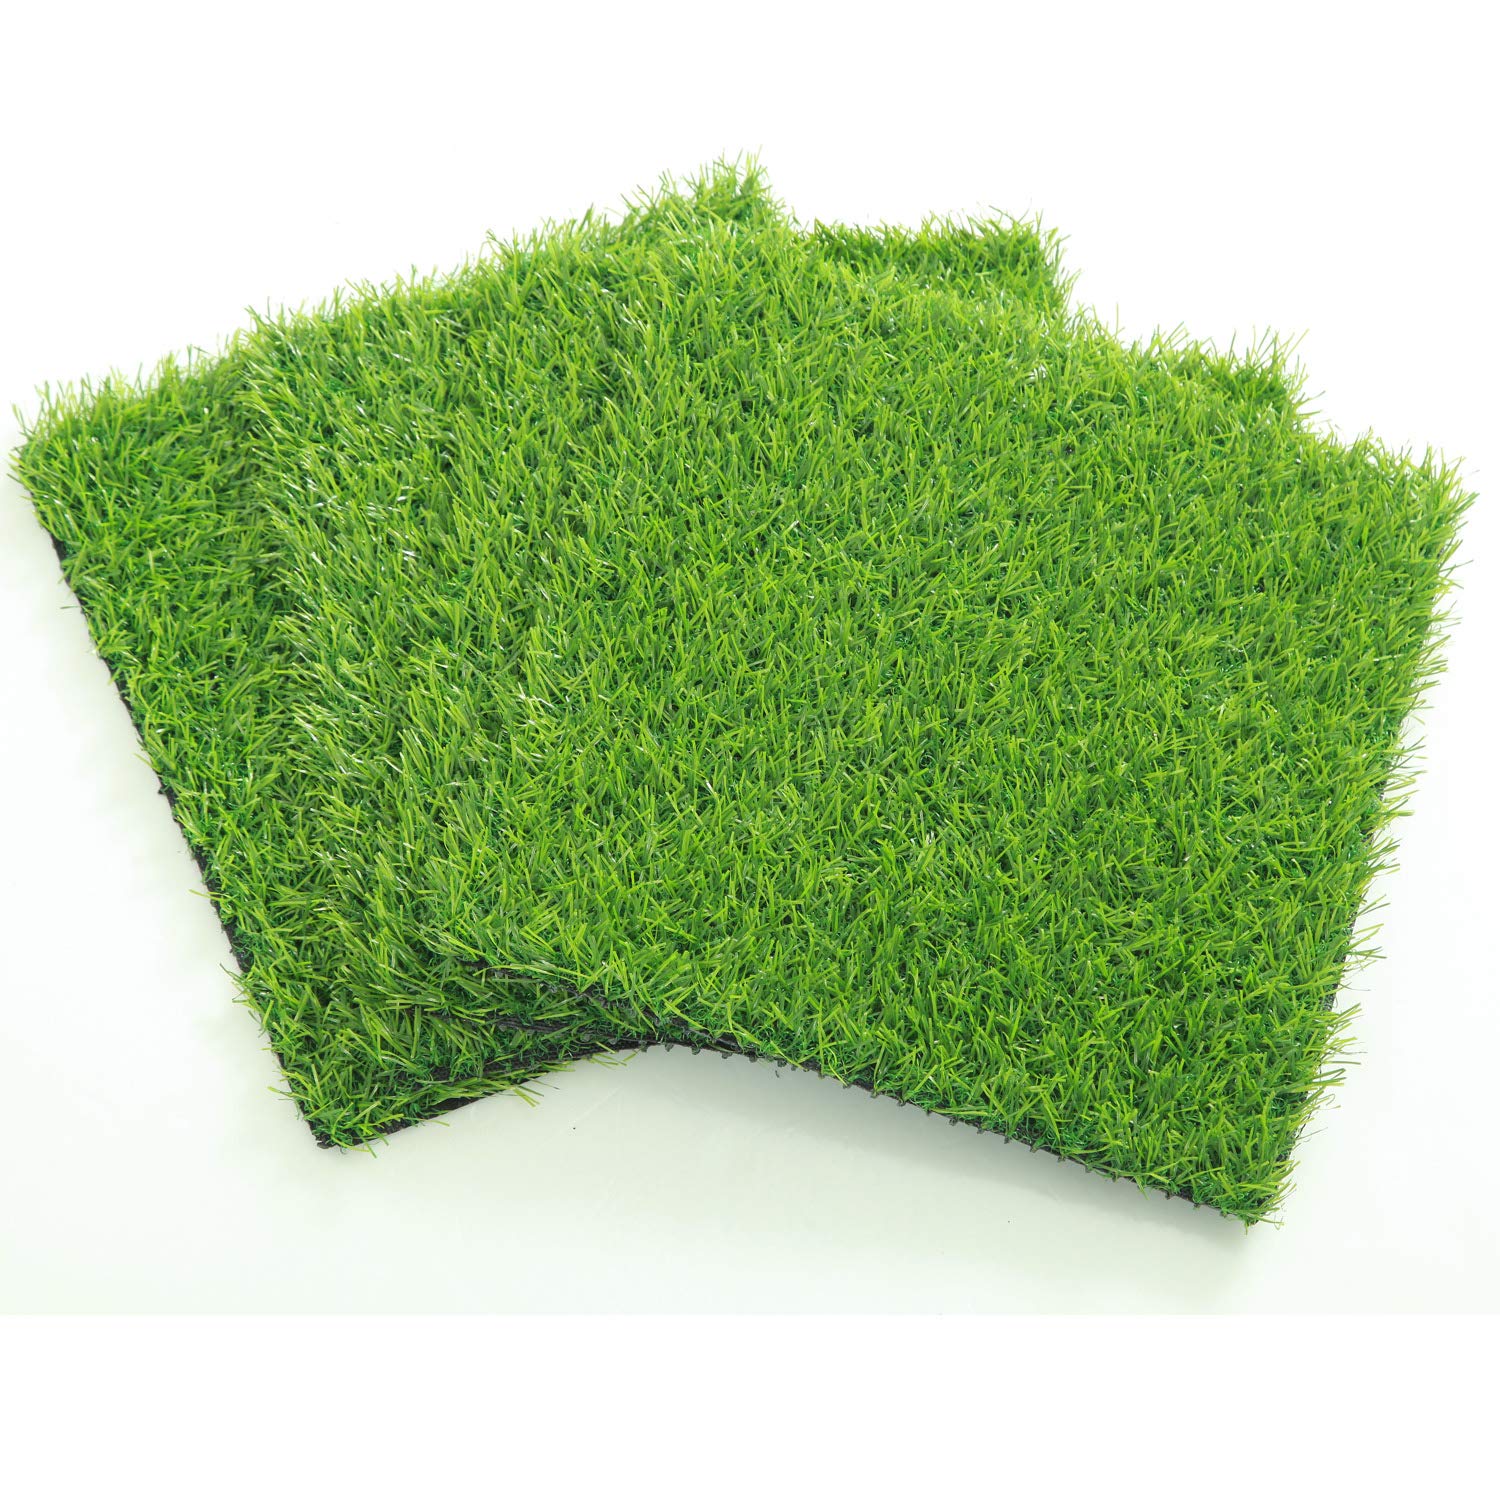 Combo 3 tấm cỏ nhựa nhân tạo cao cấp 50cm x 50cm